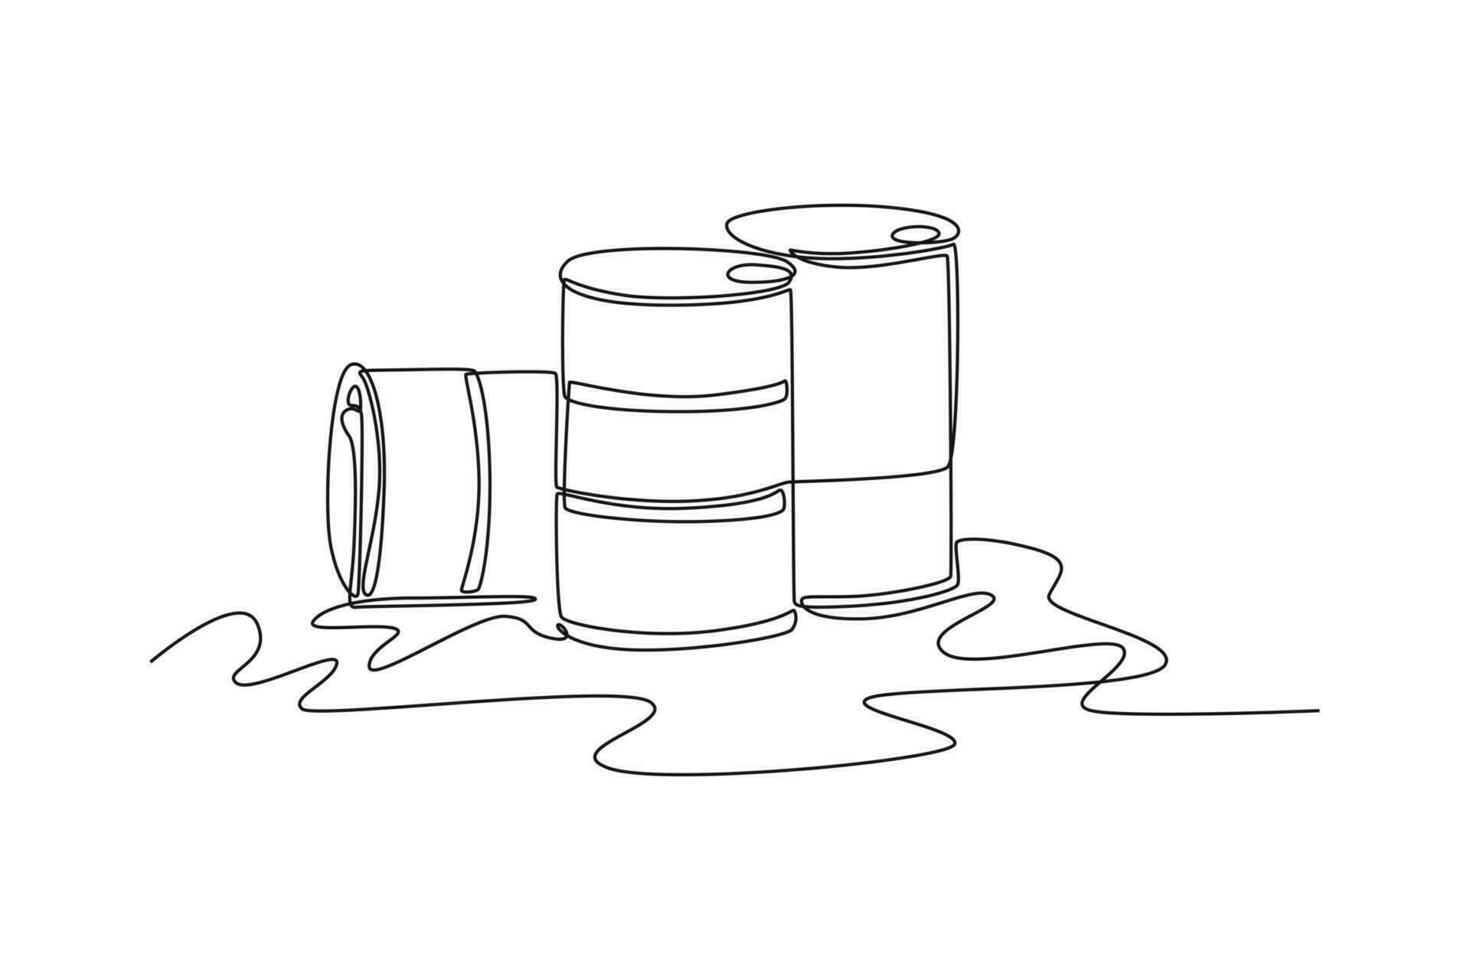 kontinuierlich einer Linie Zeichnung Abfall Öl. Welt Umgebung Tag Konzept. Single Linie zeichnen Design Vektor Grafik Illustration.